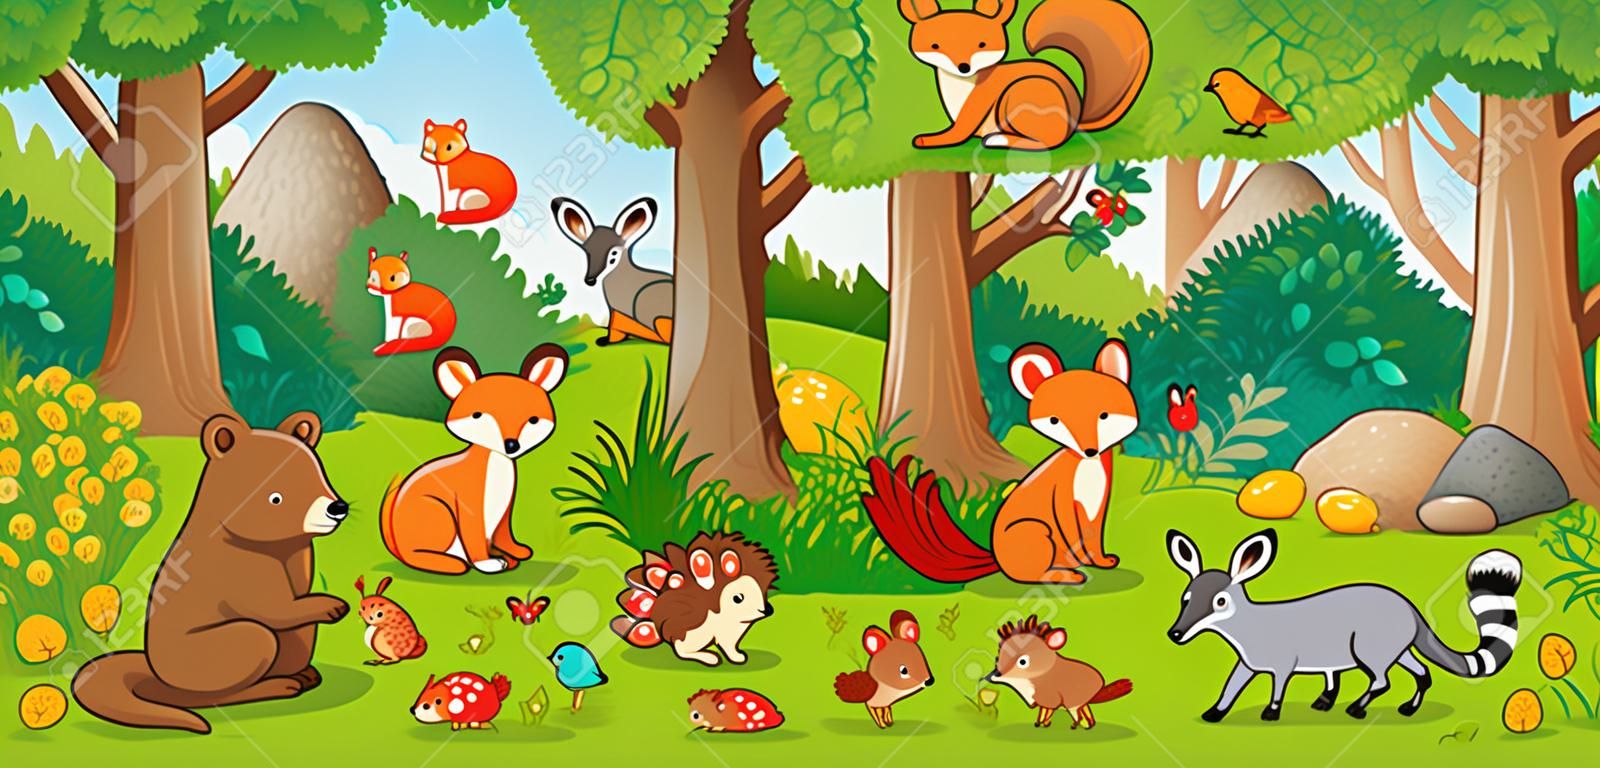 Ilustração vetorial com animais bonitos da floresta em um estilo das crianças. Um conjunto de mamíferos na floresta. Coleção no estilo das crianças.